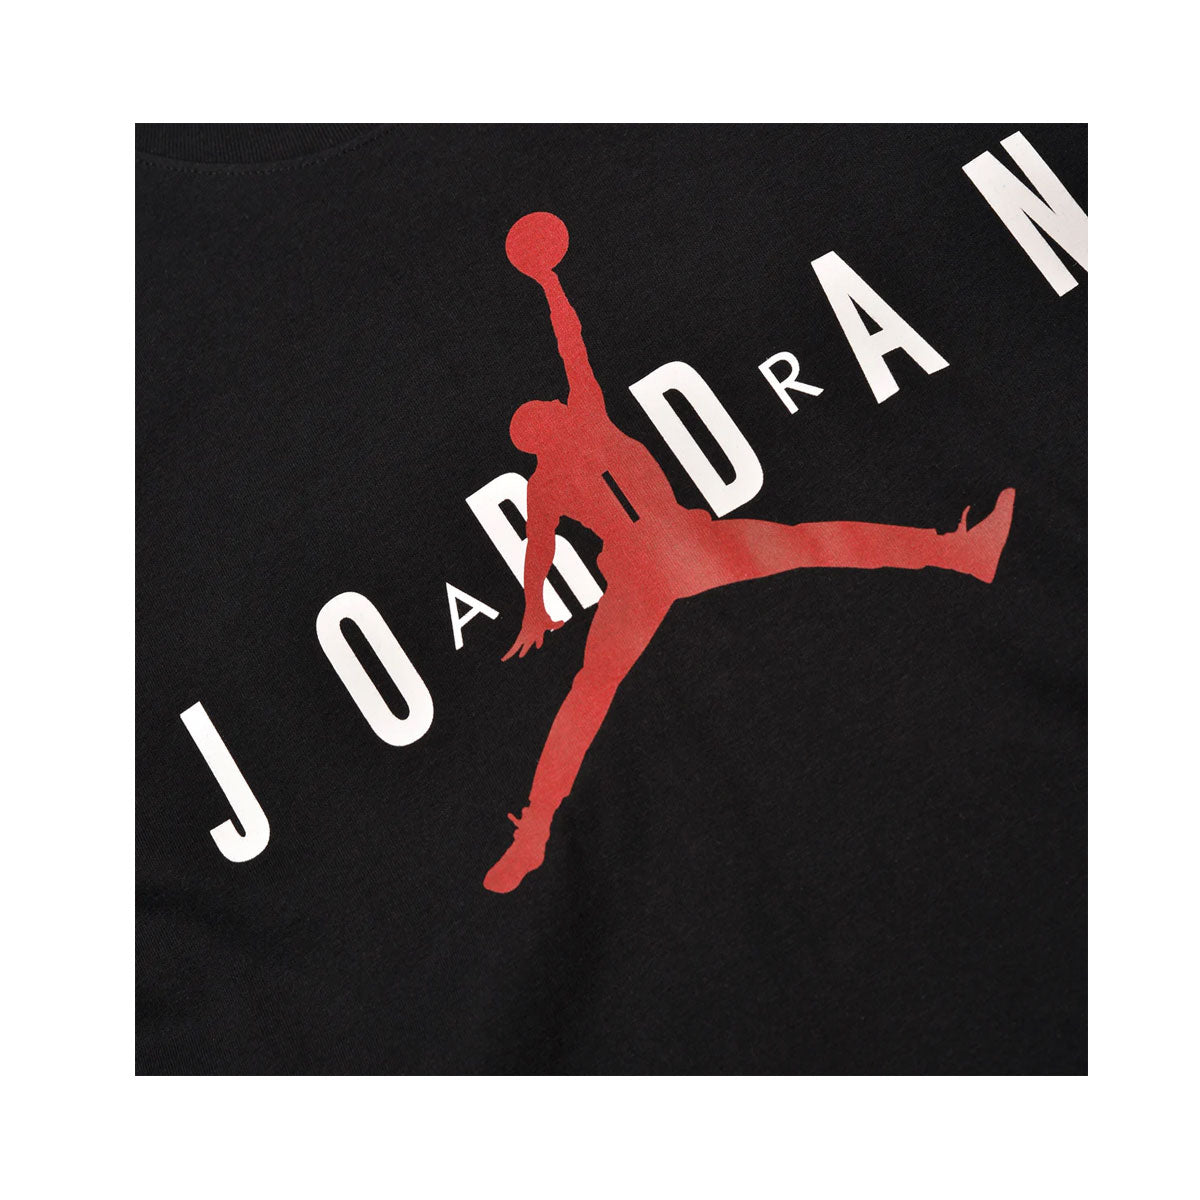 Air Jordan Men's Wordmark T-Shirt